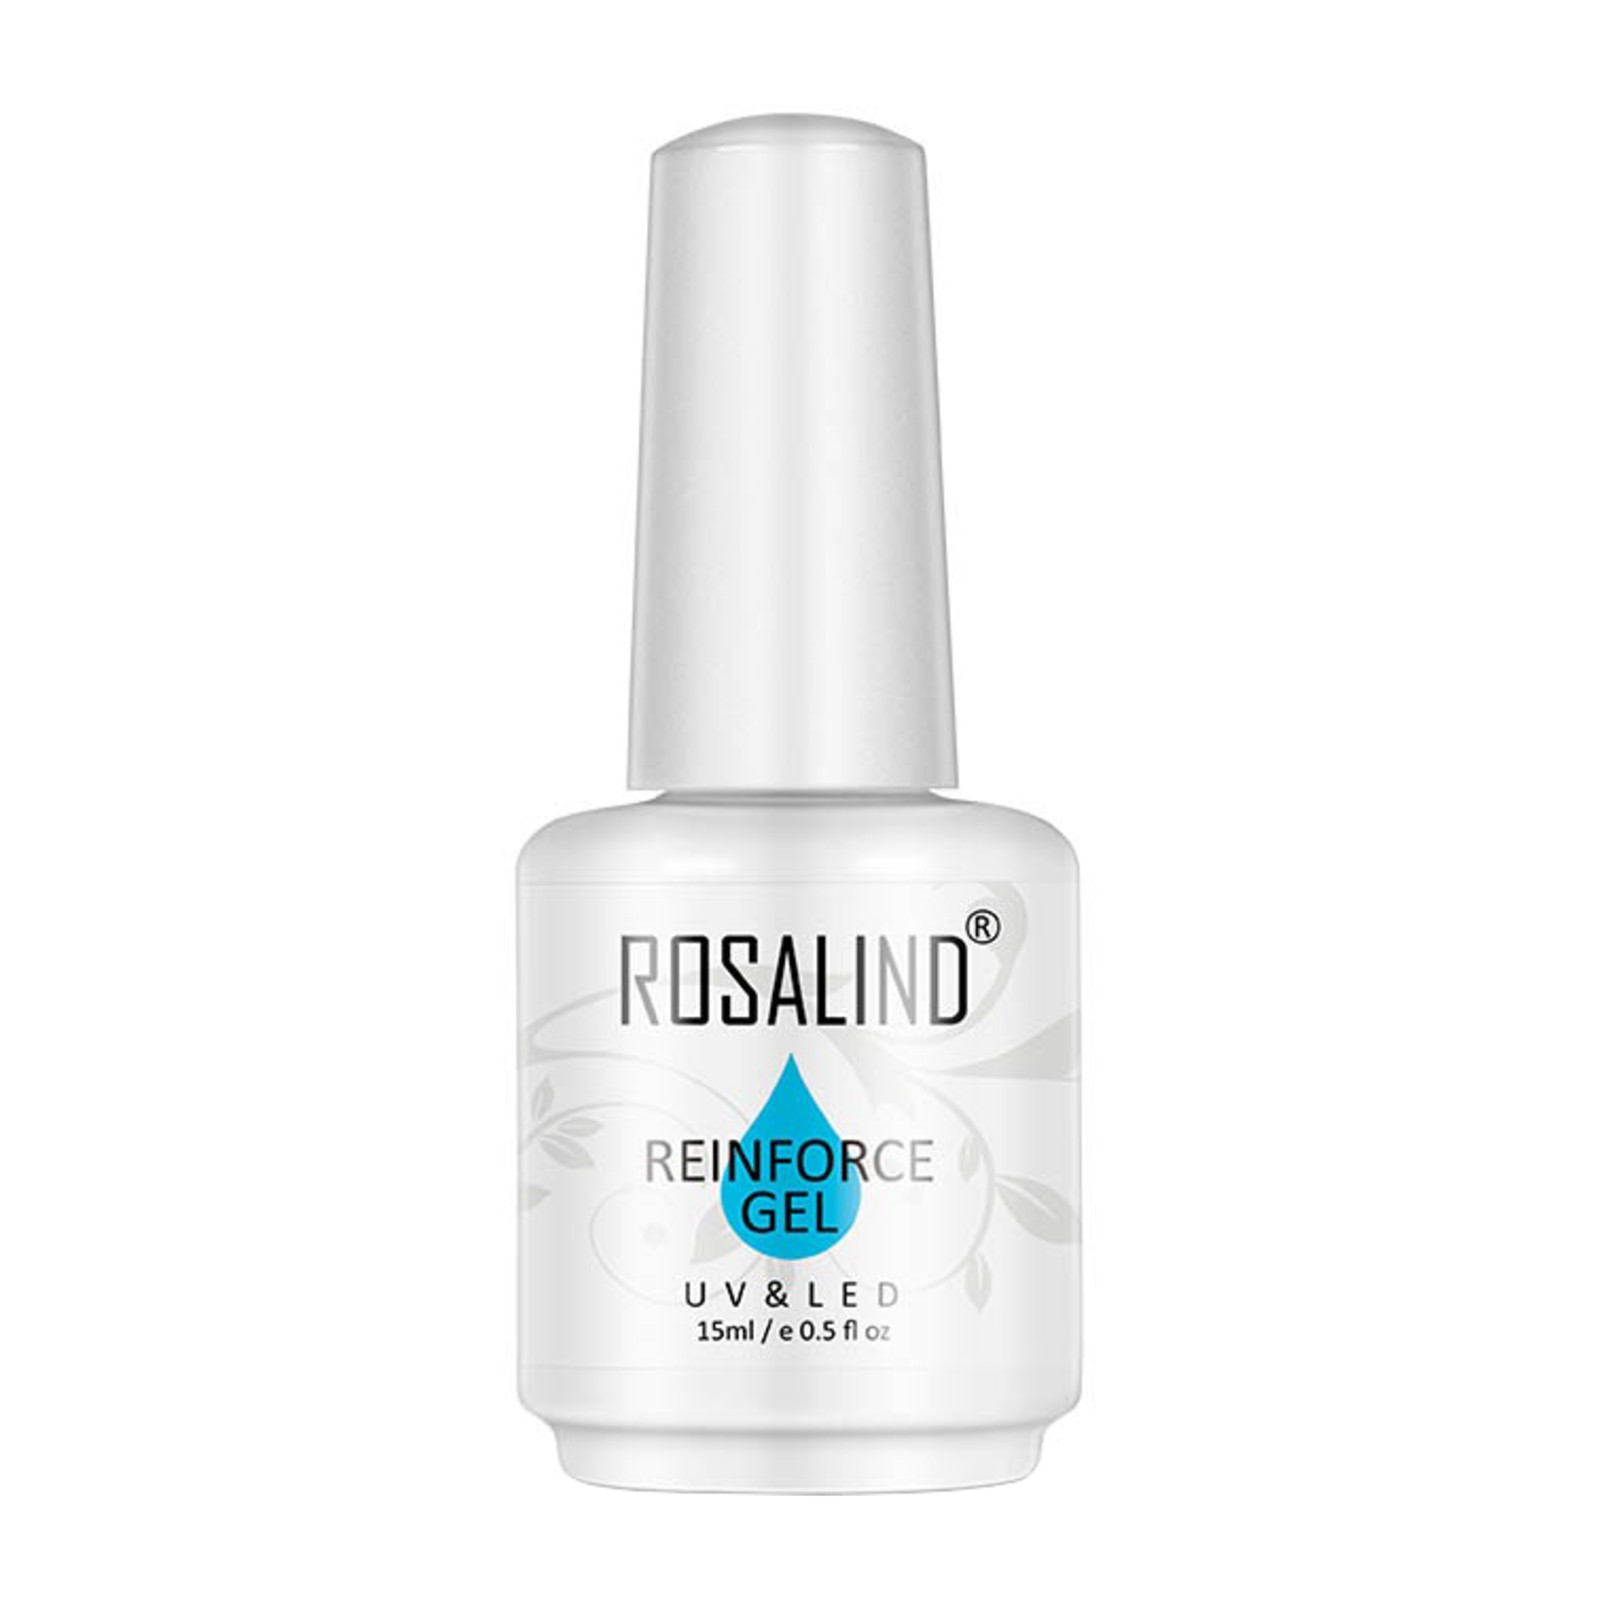 Rosalind - Reinforce Gel - 15ml